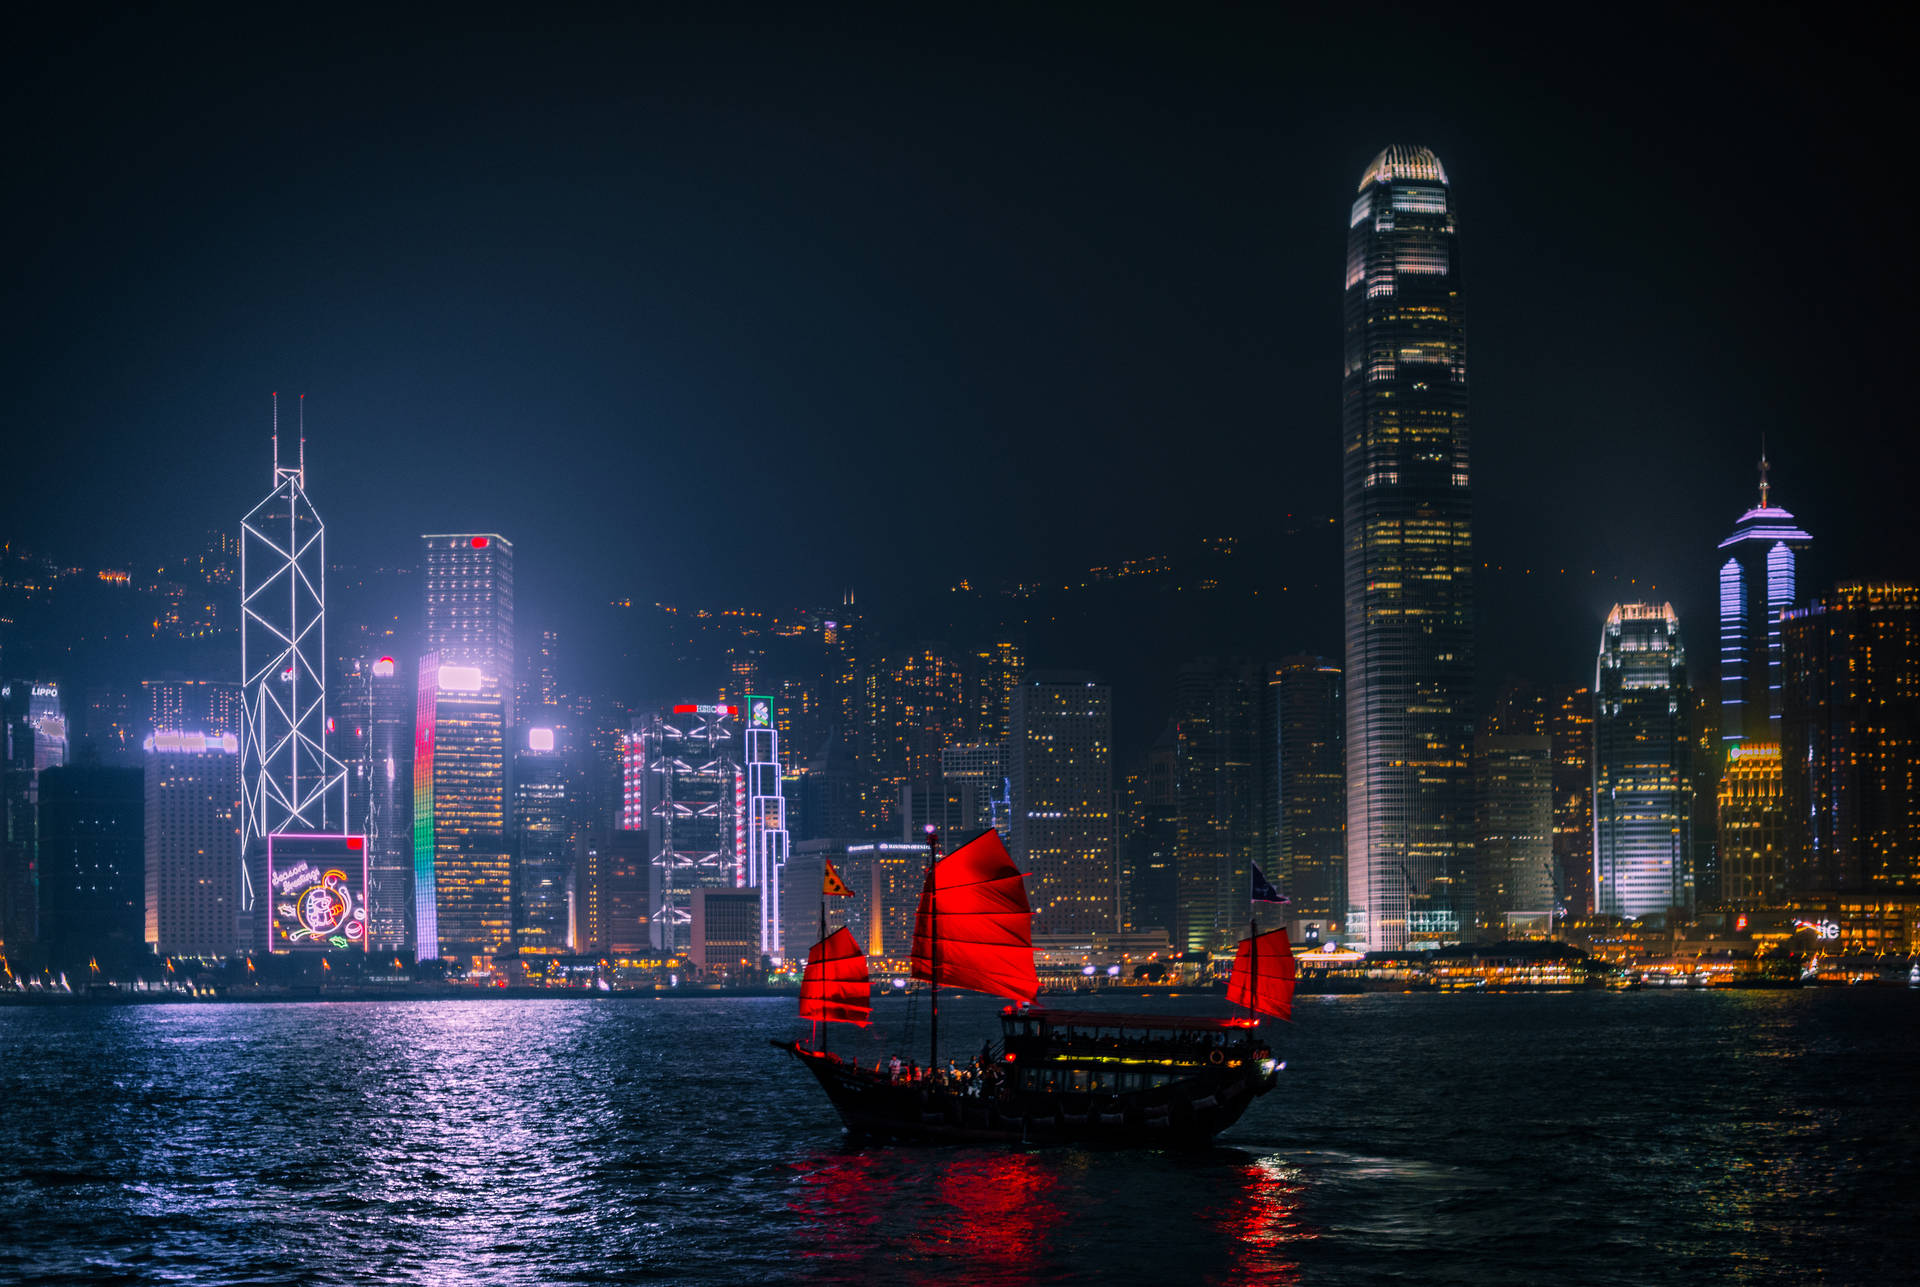 Hình nền Hong Kong miễn phí: Tận hưởng những bức ảnh đẹp miễn phí về thành phố Hong Kong với bộ sưu tập hình nền tuyệt đẹp. Bộ sưu tập này chứa đựng những hình ảnh độc đáo và đẹp mắt nhất về thành phố, từ tòa nhà chọc trời đến người dân đang sống và làm việc tại đó.